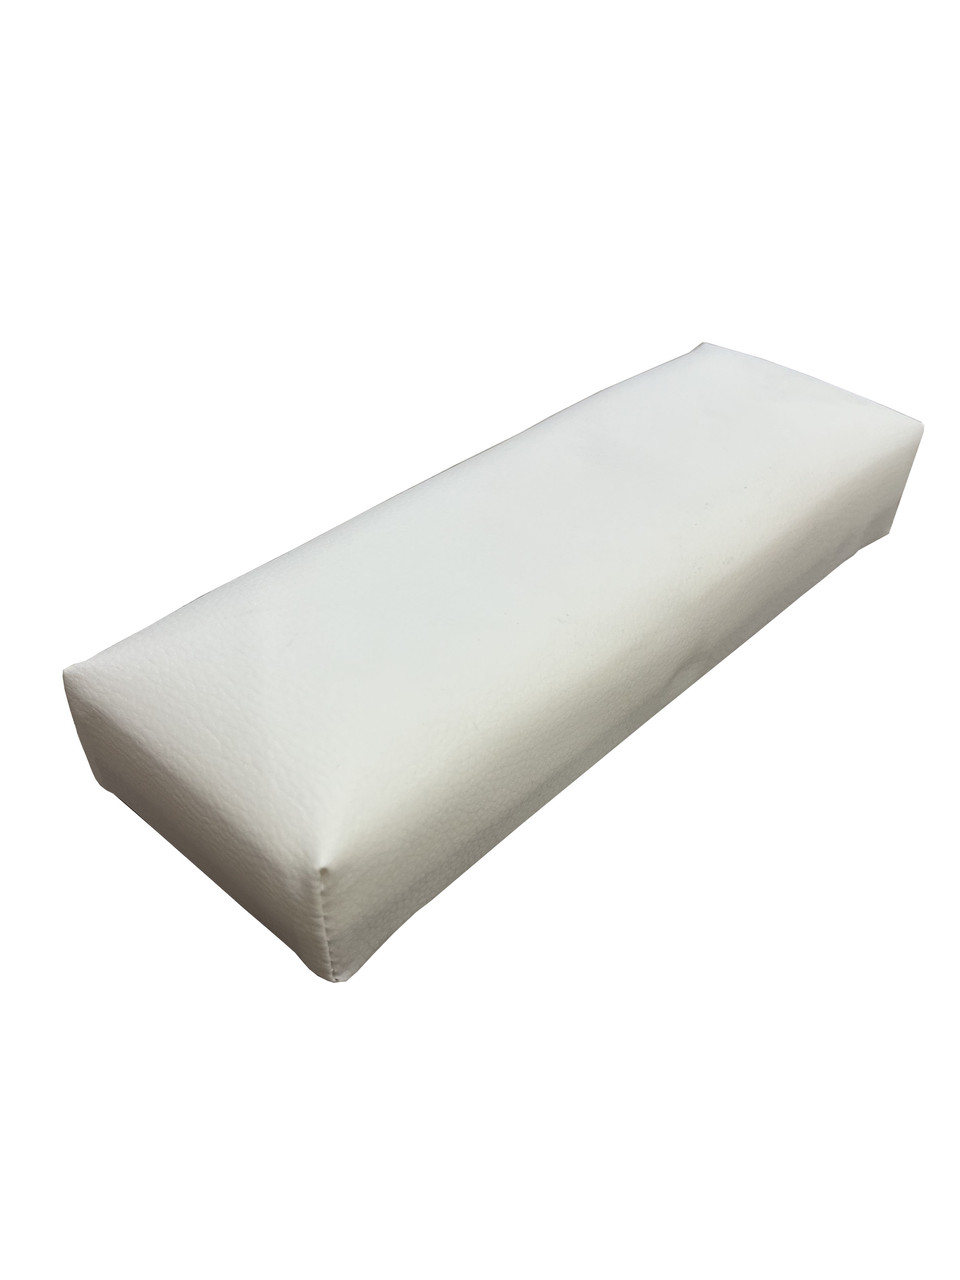 Підлокітник для манікюру білий 30х10х5 см. Підставка для рук, аксесуари для салону краси